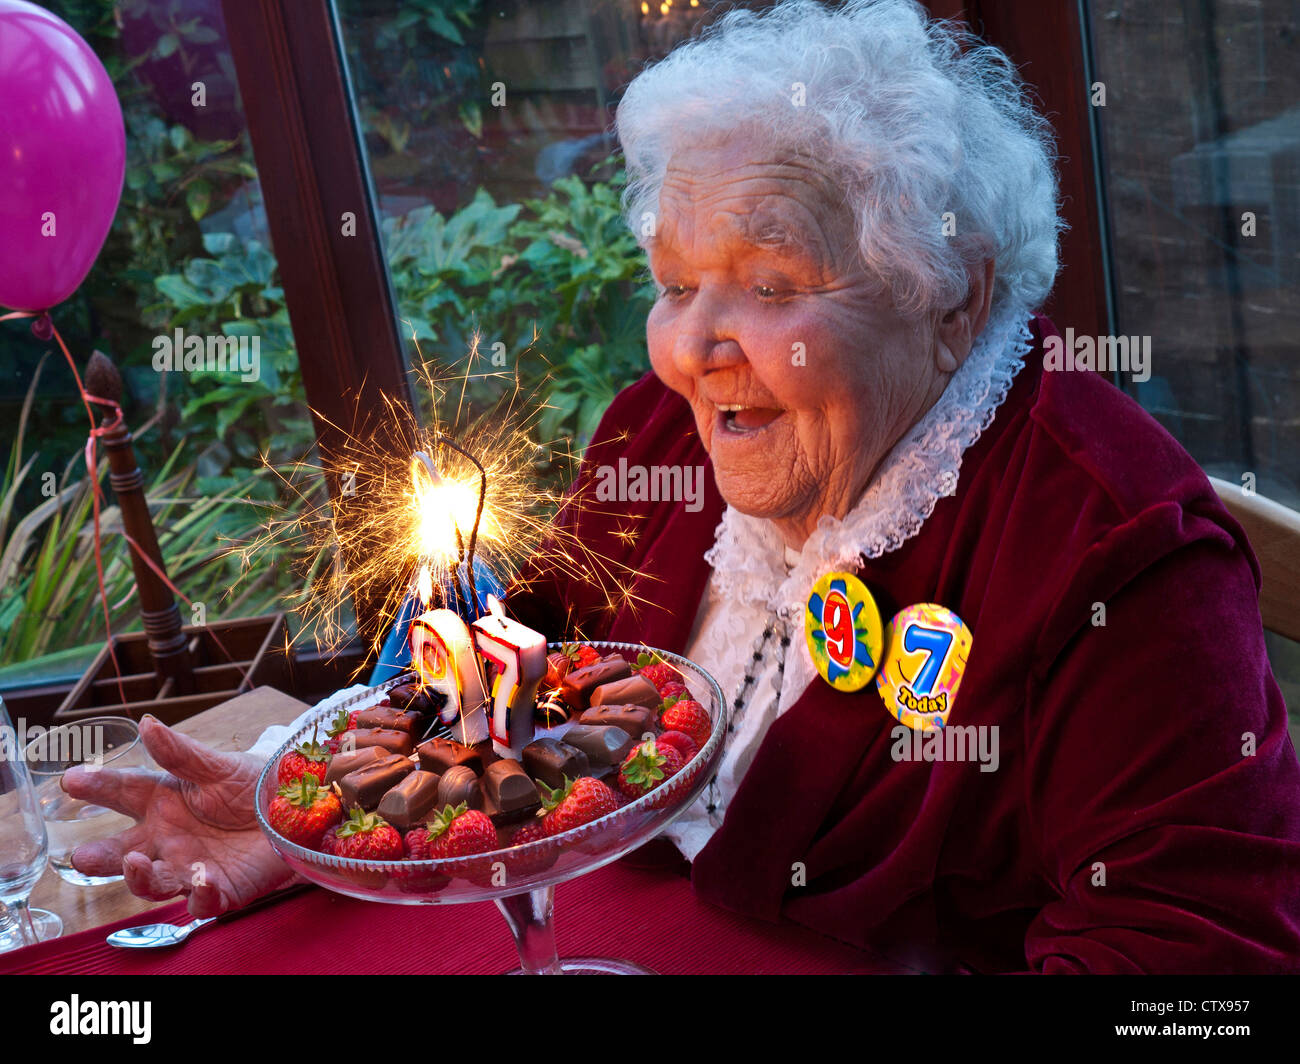 Torta di compleanno anziana signora scintilla divertimento sorridente celebrando il suo 97th compleanno a casa di famiglia con torta frizzante con 9-7 badge di compleanno e palloncini Foto Stock